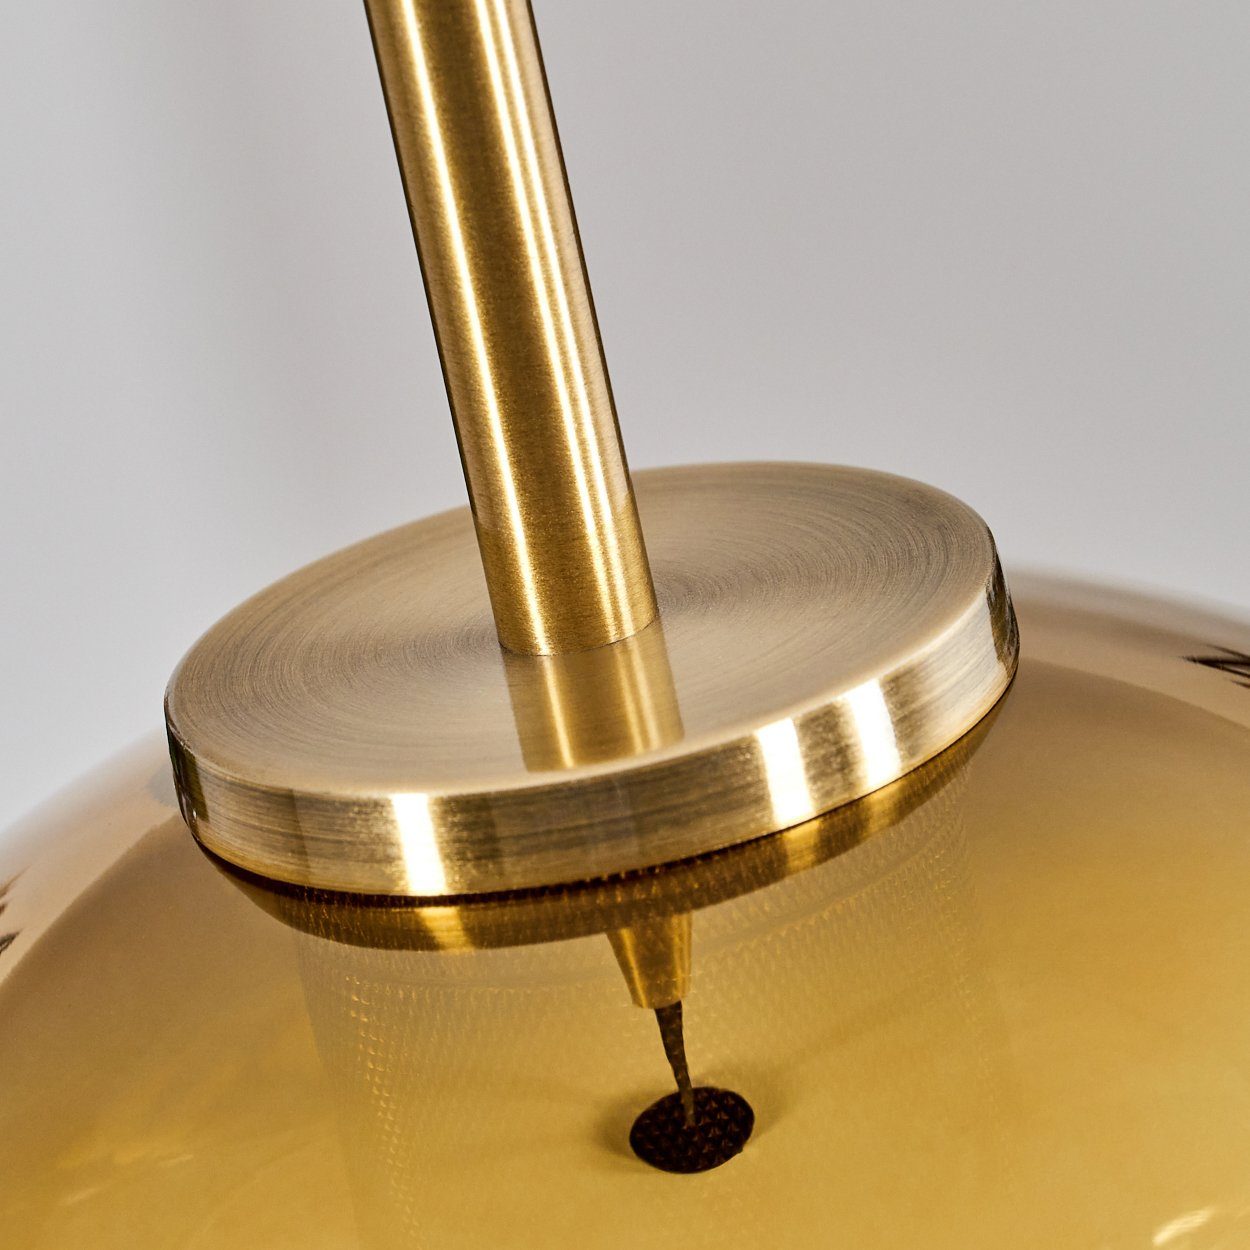 cm), 145 1 Altmessing-/Goldfarben/Klar, Hängeleuchte Glas Hängelampe x Höhe Metall/Glas Leuchtmittel, aus Schirm ohne hofstein Leuchte max. E27 mit in (20 cm, aus